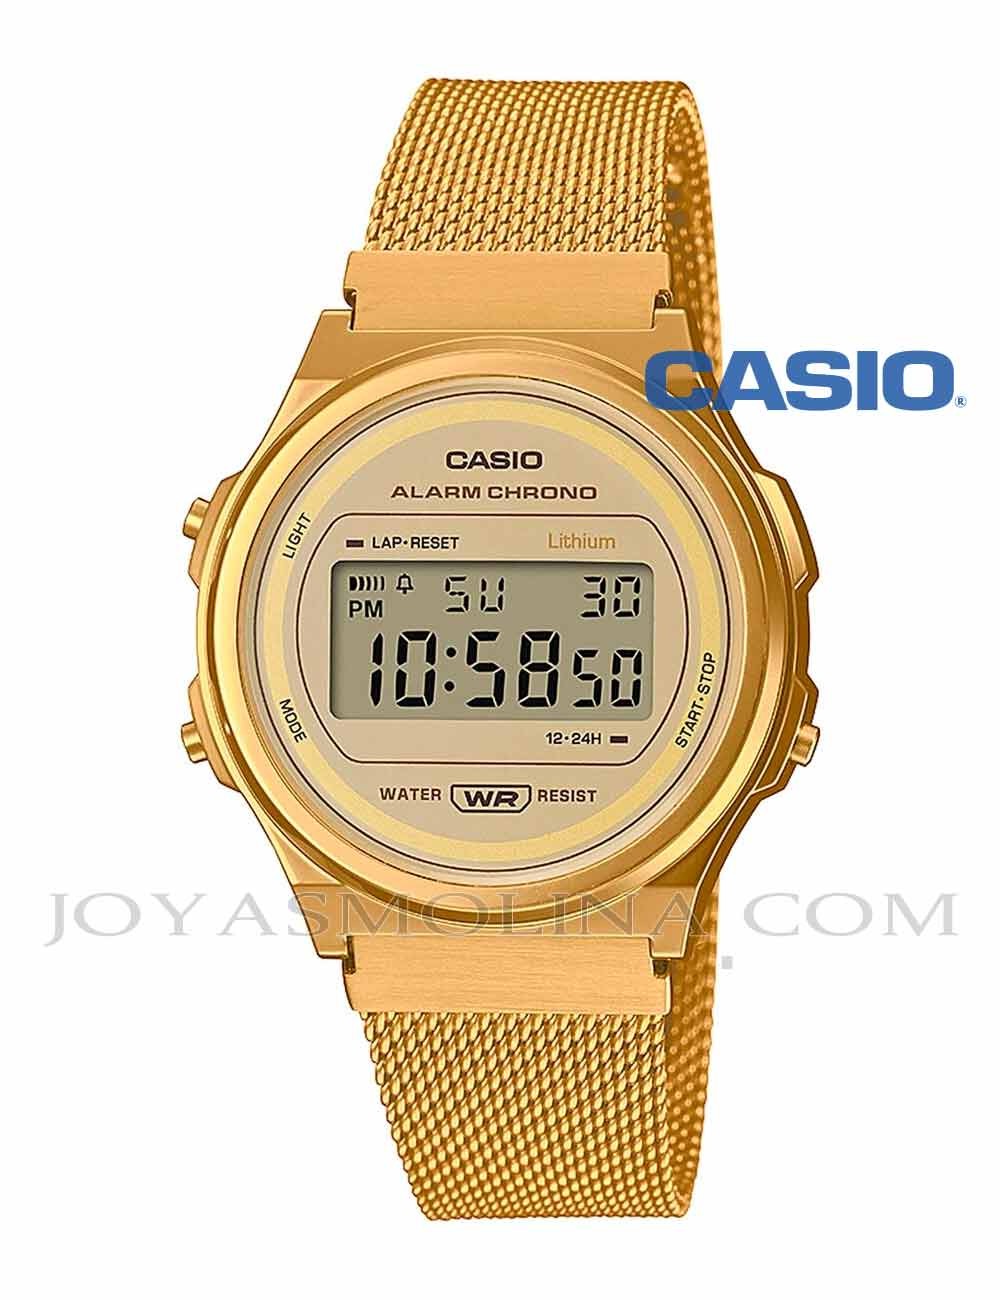 Reloj Casio digital dorado redondo vintage malla